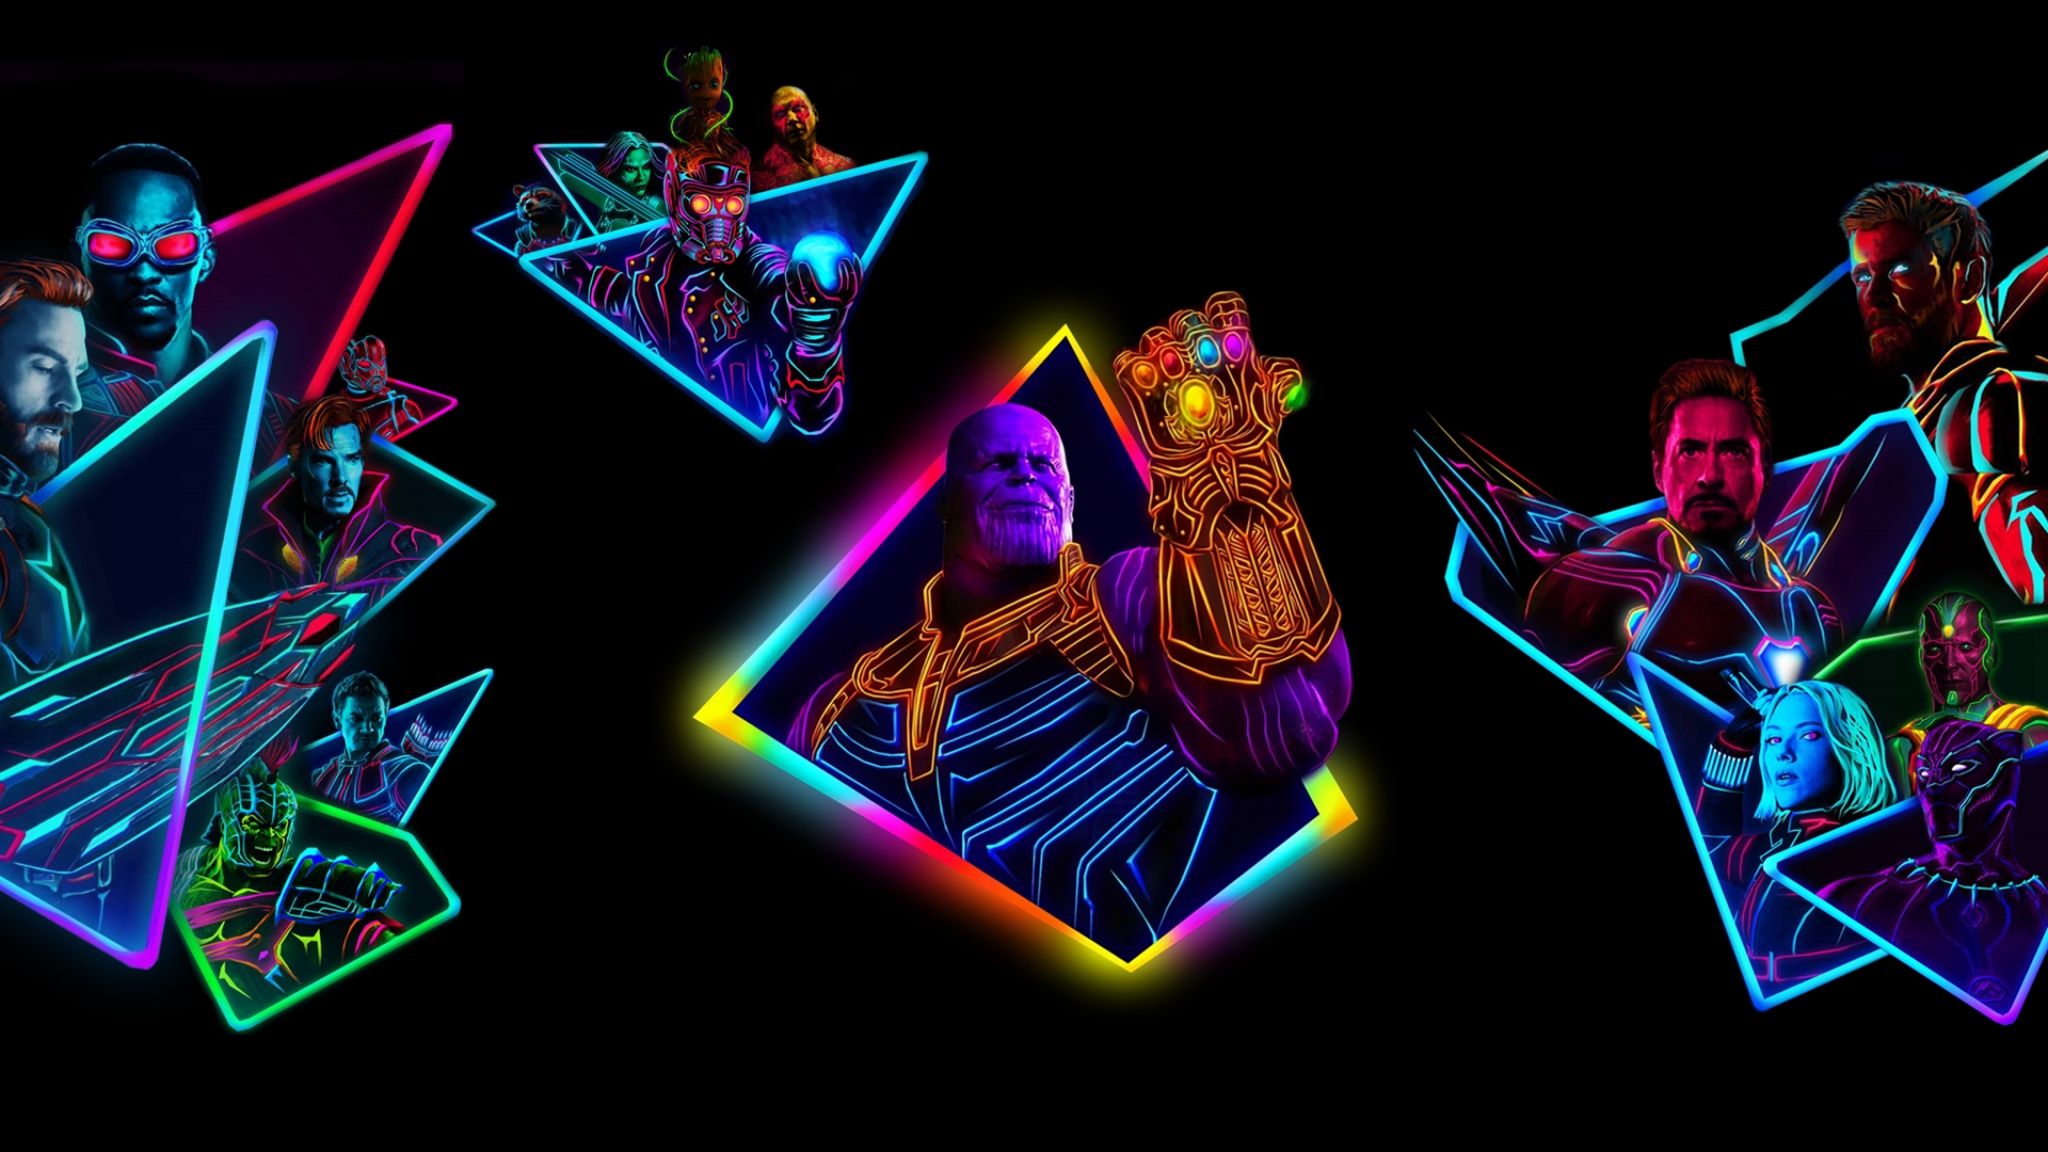 Download Avengers Infinity War 2018 80s Neon Style Digital Art Ultra Wide m...